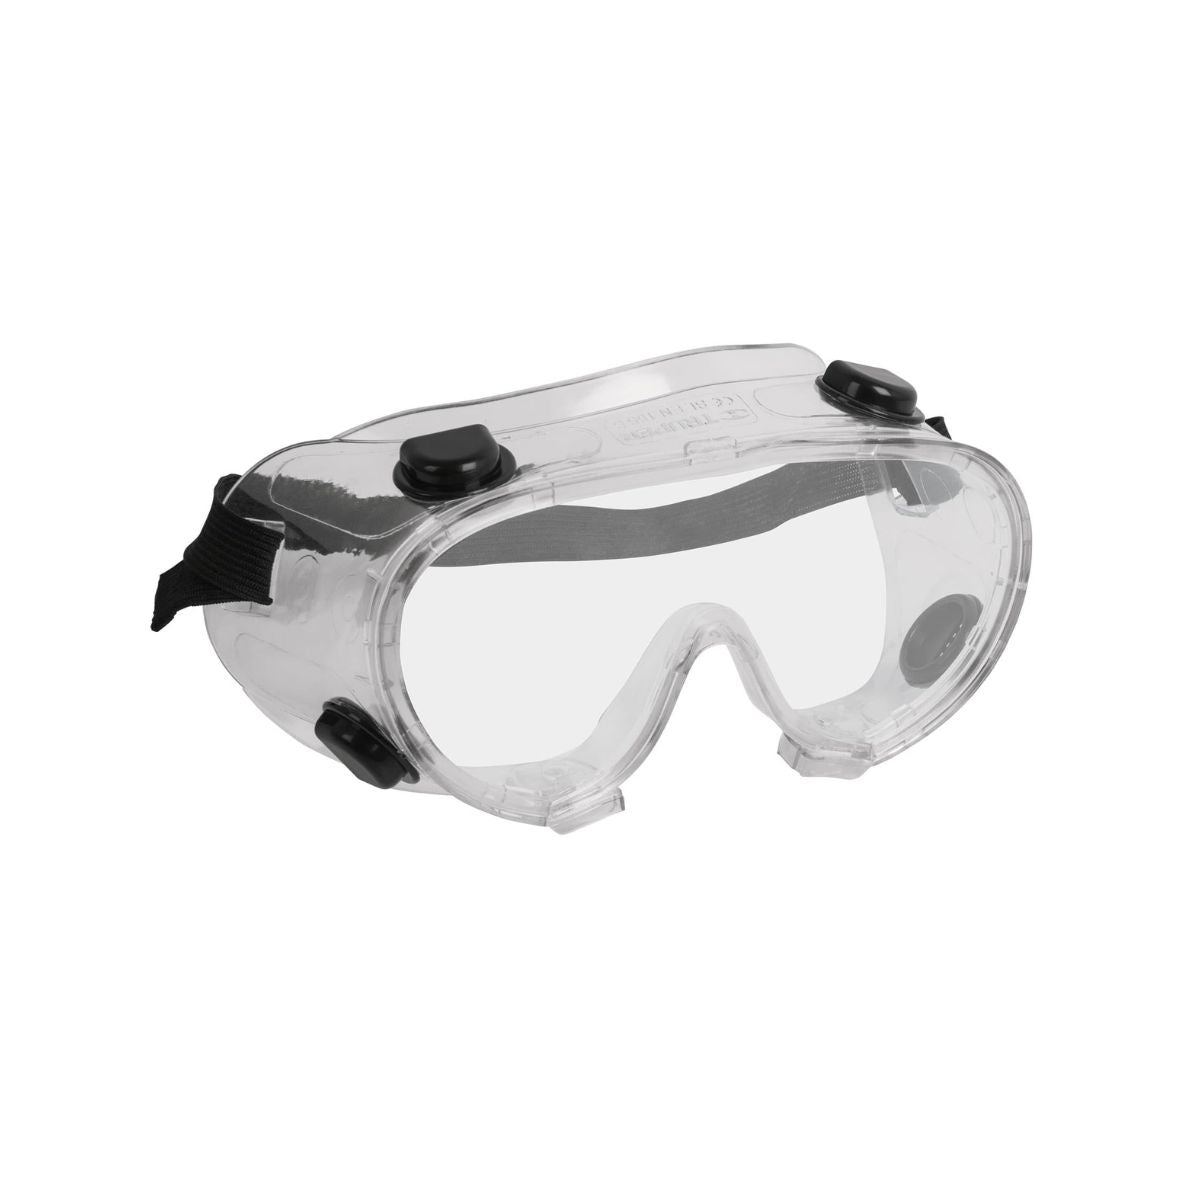 Goggles De Seguridad Con Válvulas De Ventilación Indirecta Truper 12220